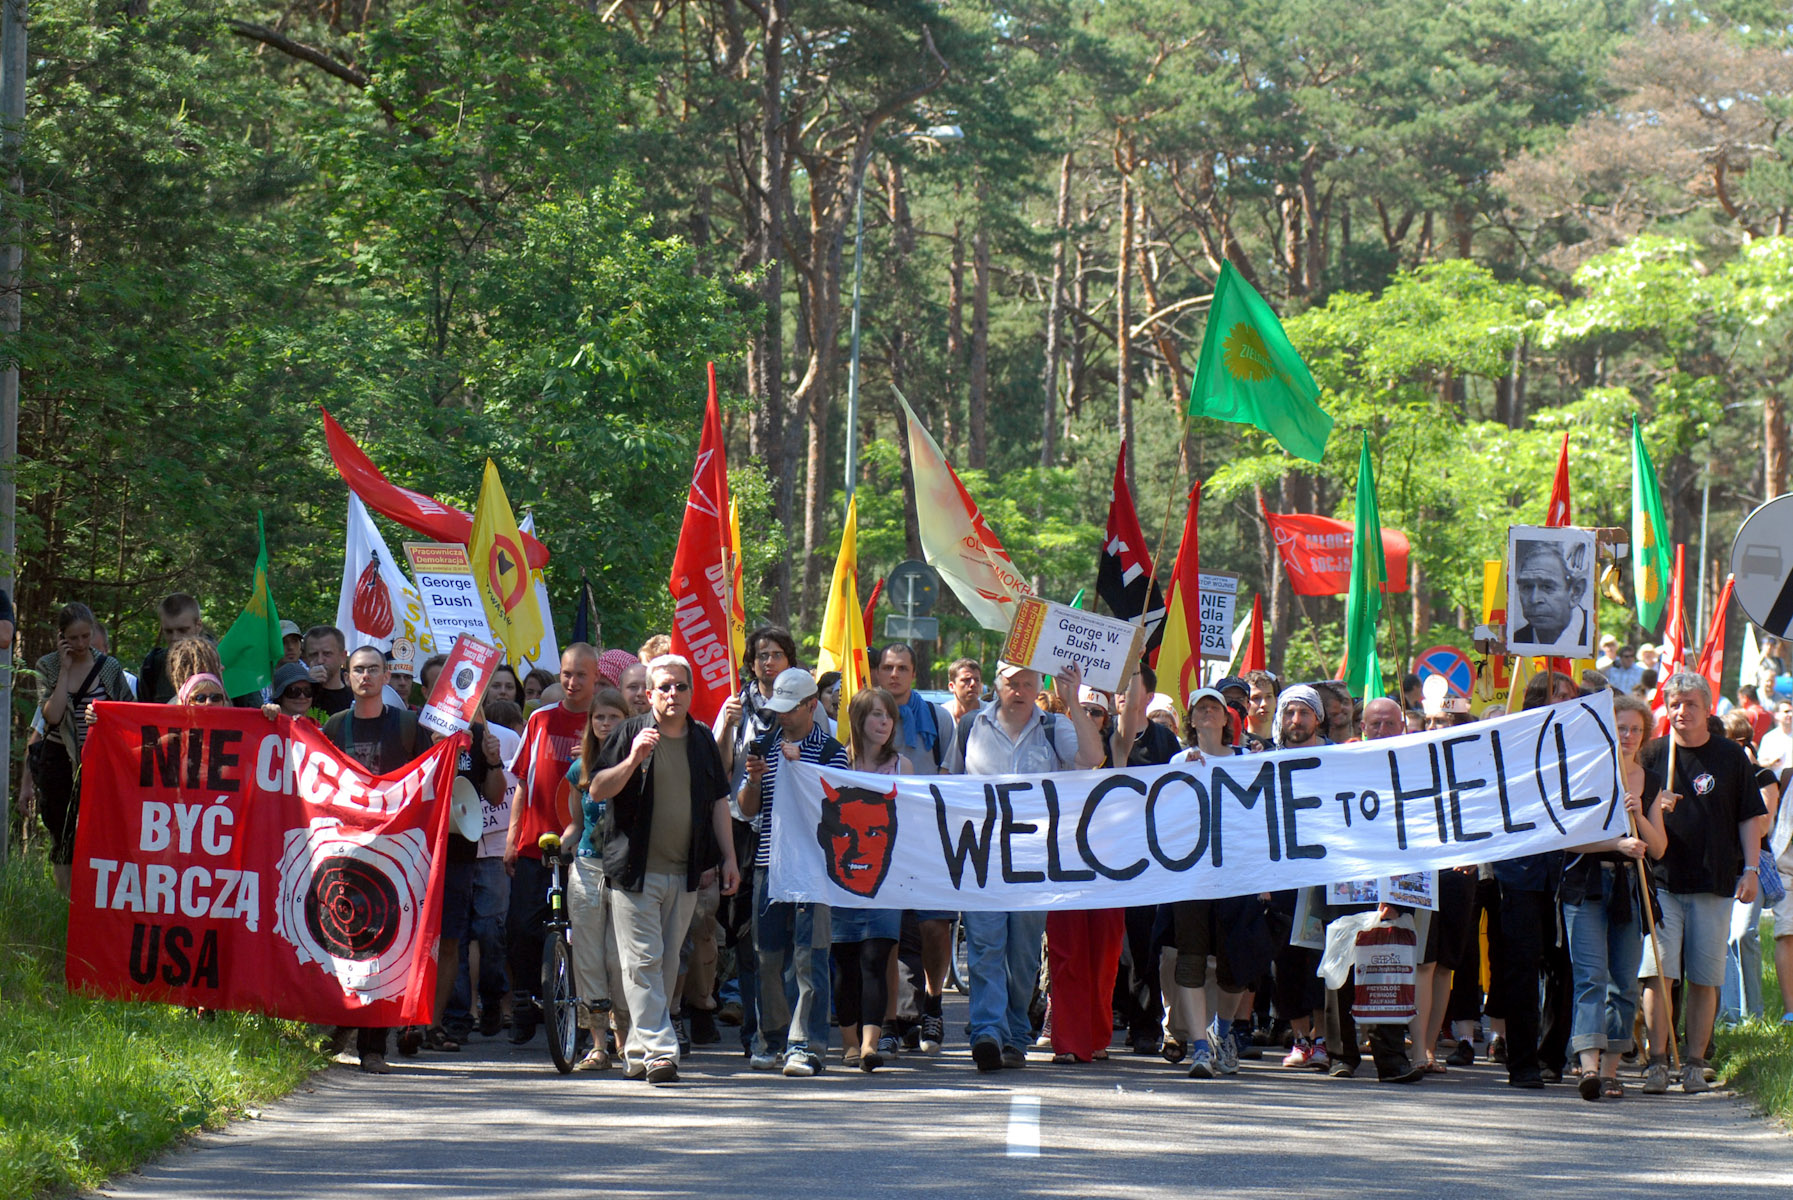 Demonstracja antyglobalistów na trasie Jurata-Hel w związku z wizytą prezydenta Stanów Zjednoczonych George’a W. Busha.